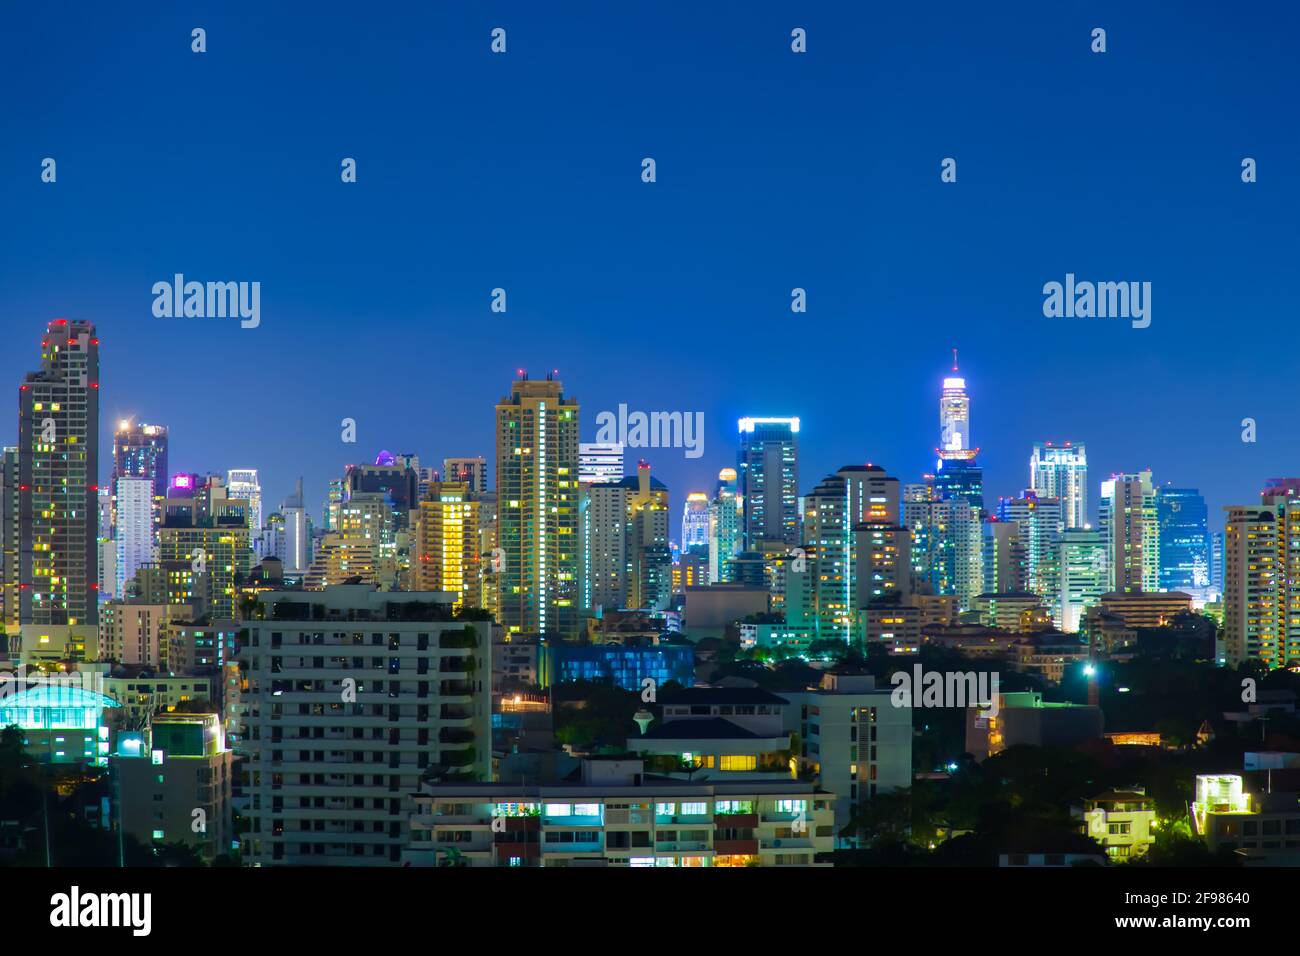 Image of Bangkok city at night. Stock Photo